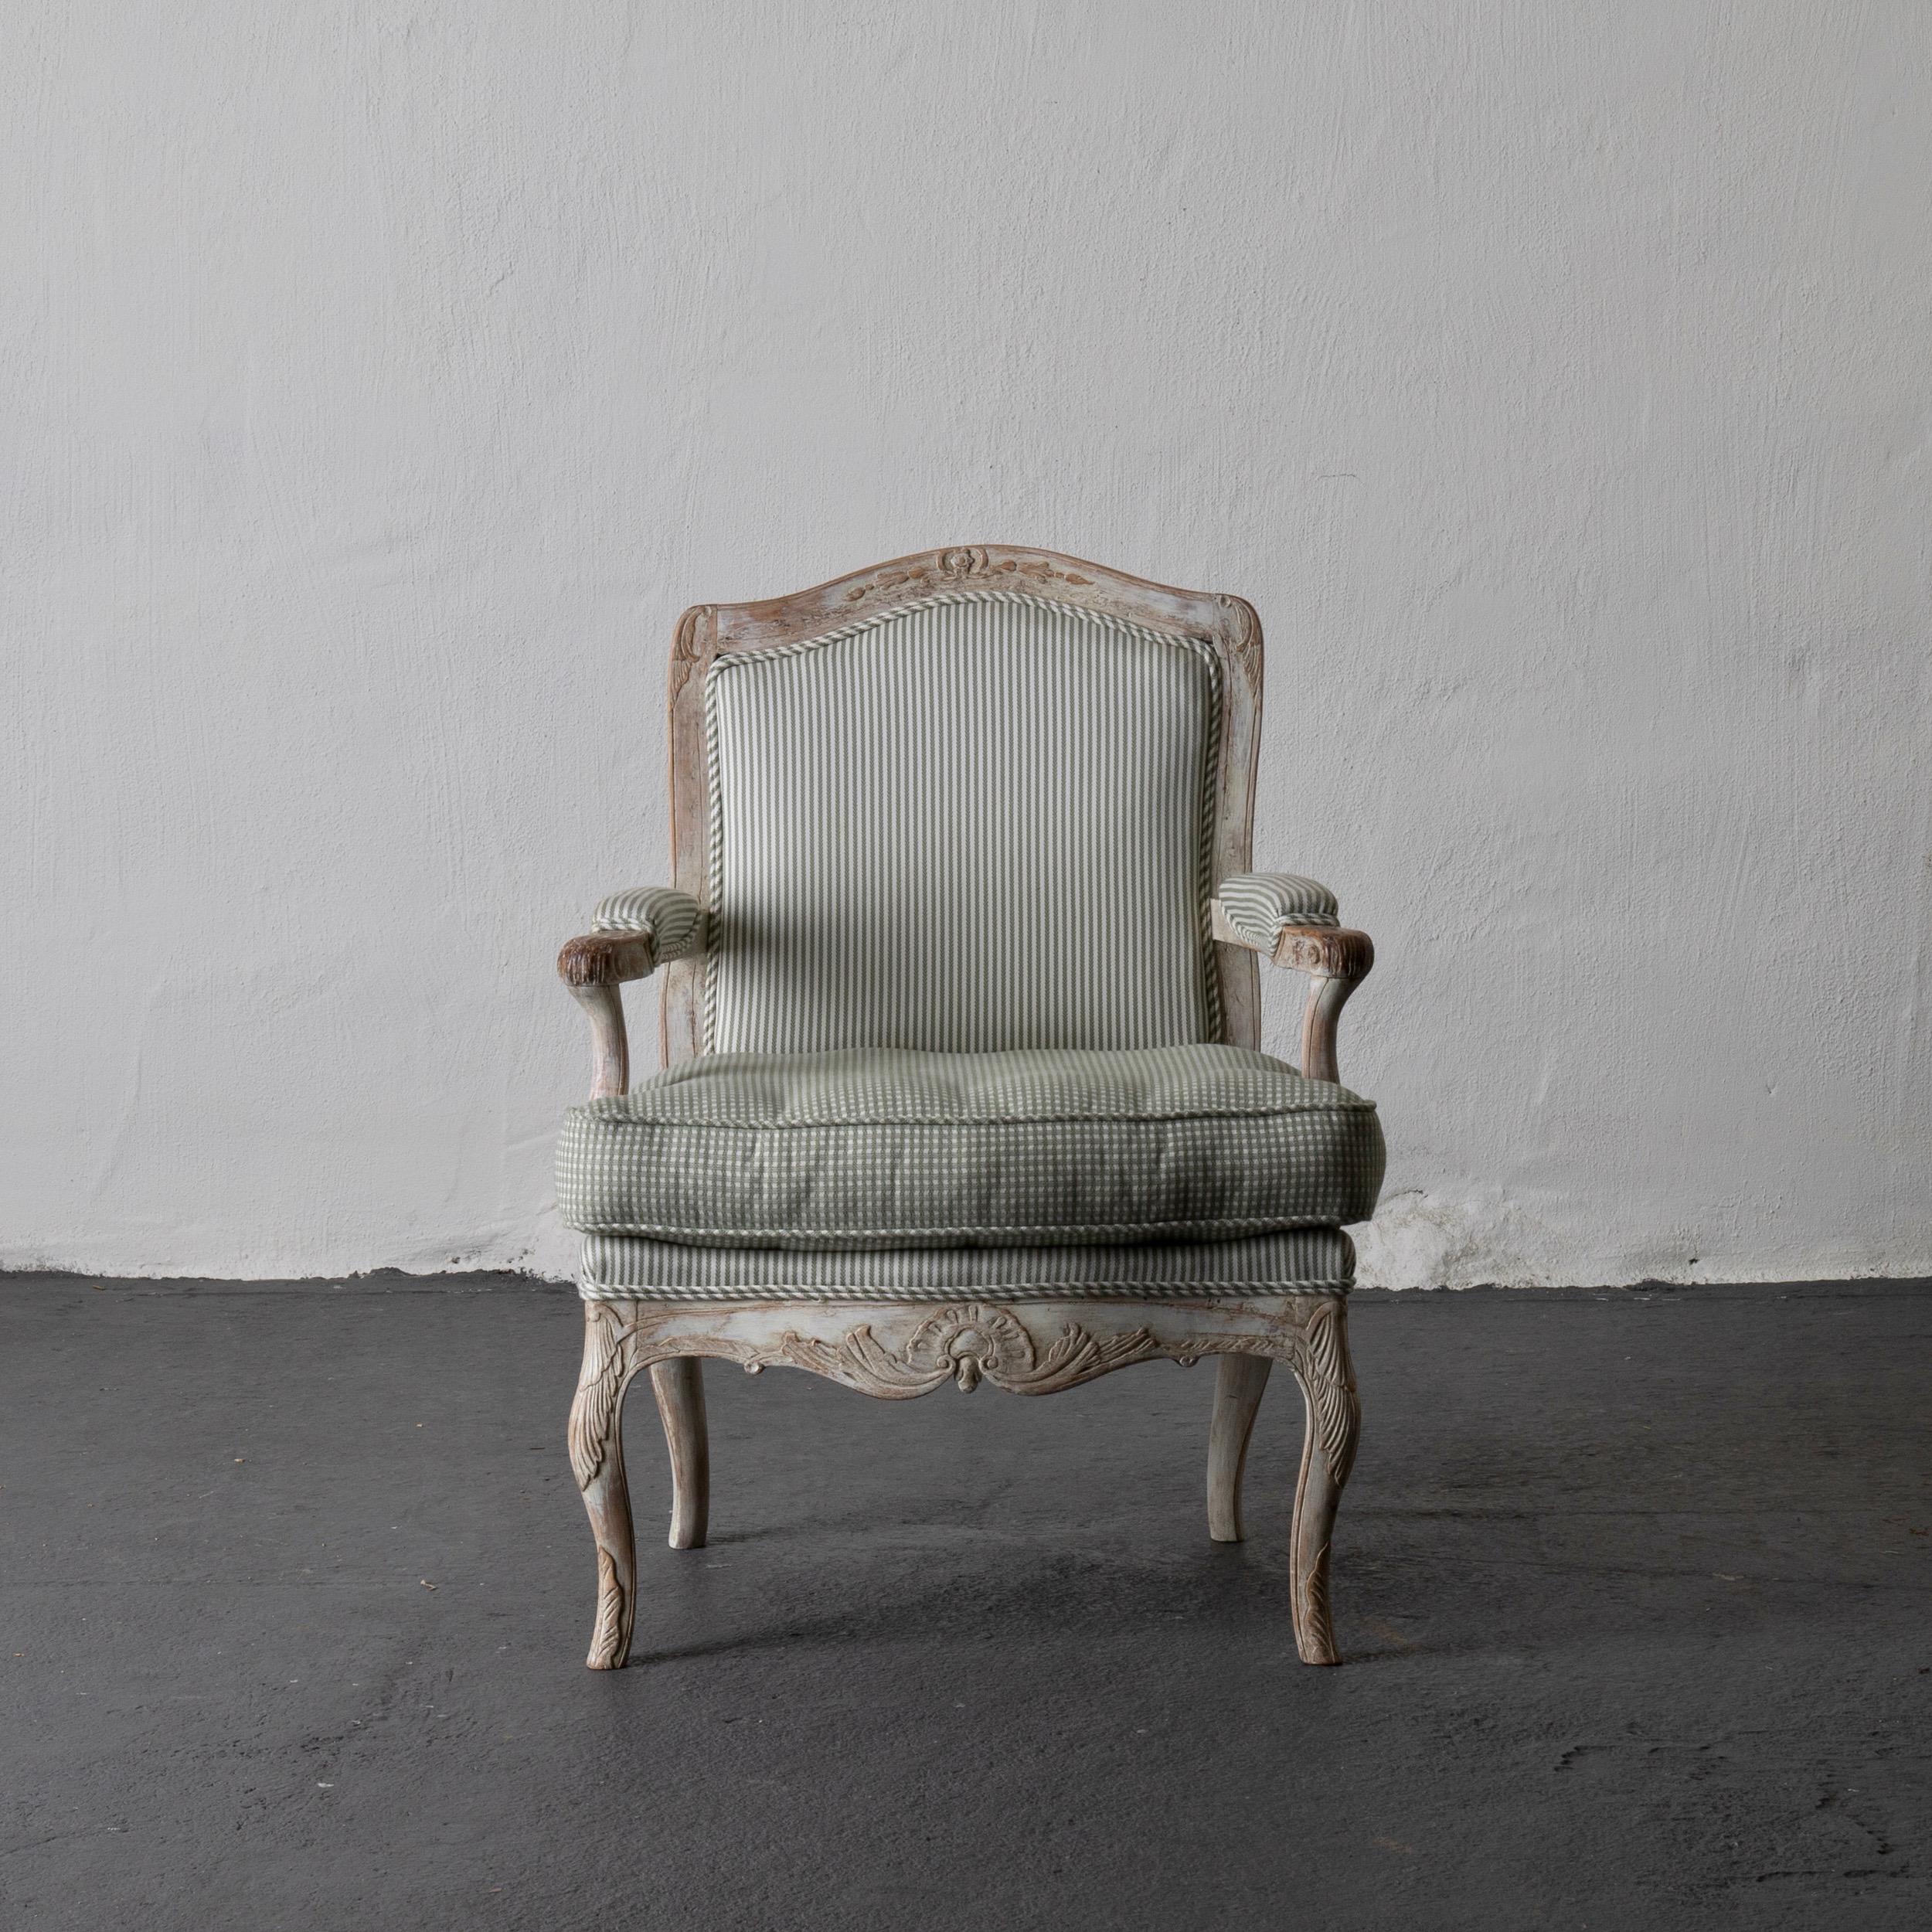 Sessel Rokoko Schwedisch weiß hellgrün, Schweden. Ein einzelner Sessel mit Originallackierung aus der Zeit des Rokoko (1750-1775) in Schweden. Ein weiß gewaschener Holzrahmen, verziert mit Rocailles und Akanthusblättern. Retuschierte Farbe.

 